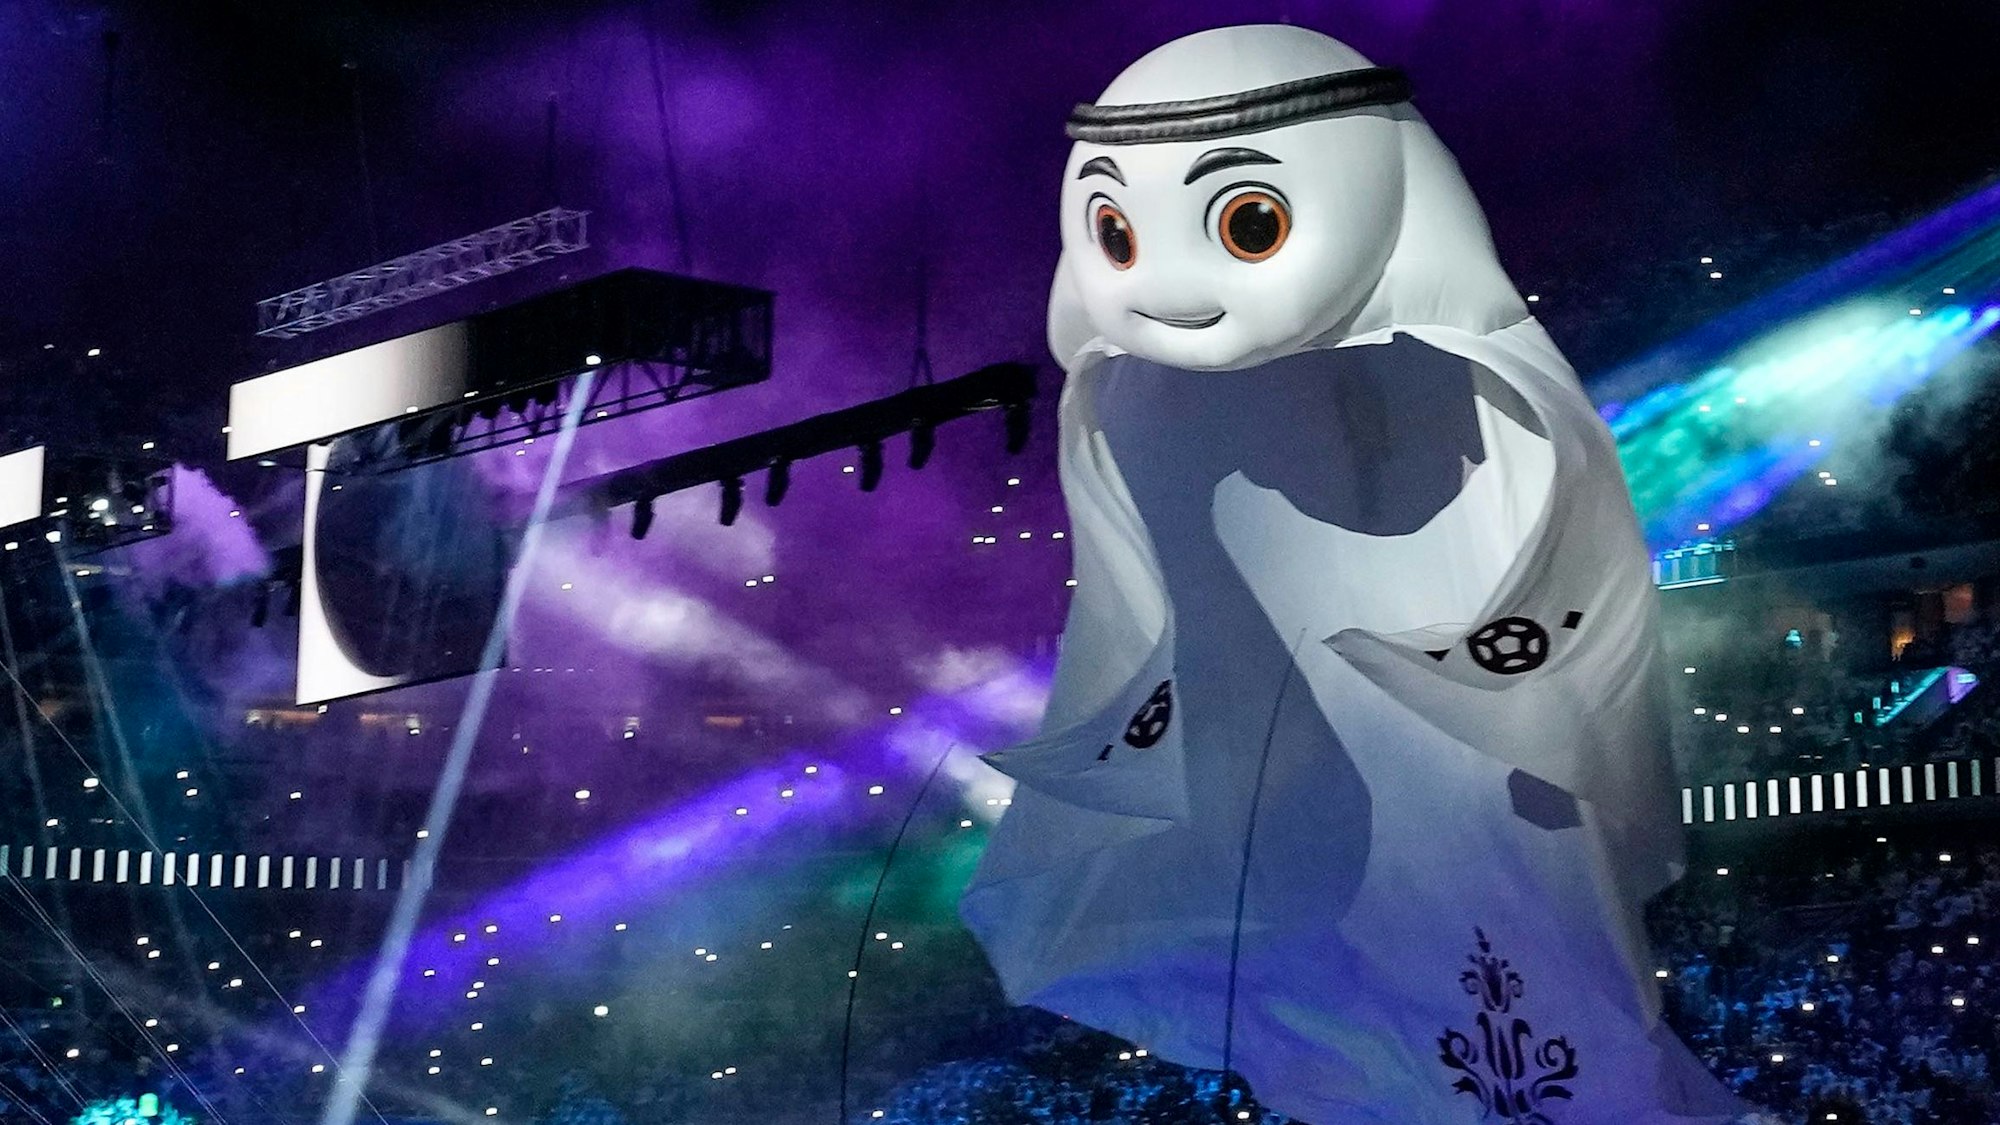 Das WM-Maskottchen schwebt über die Bühne bei der WM-Eröffnungsfeier in Katar.